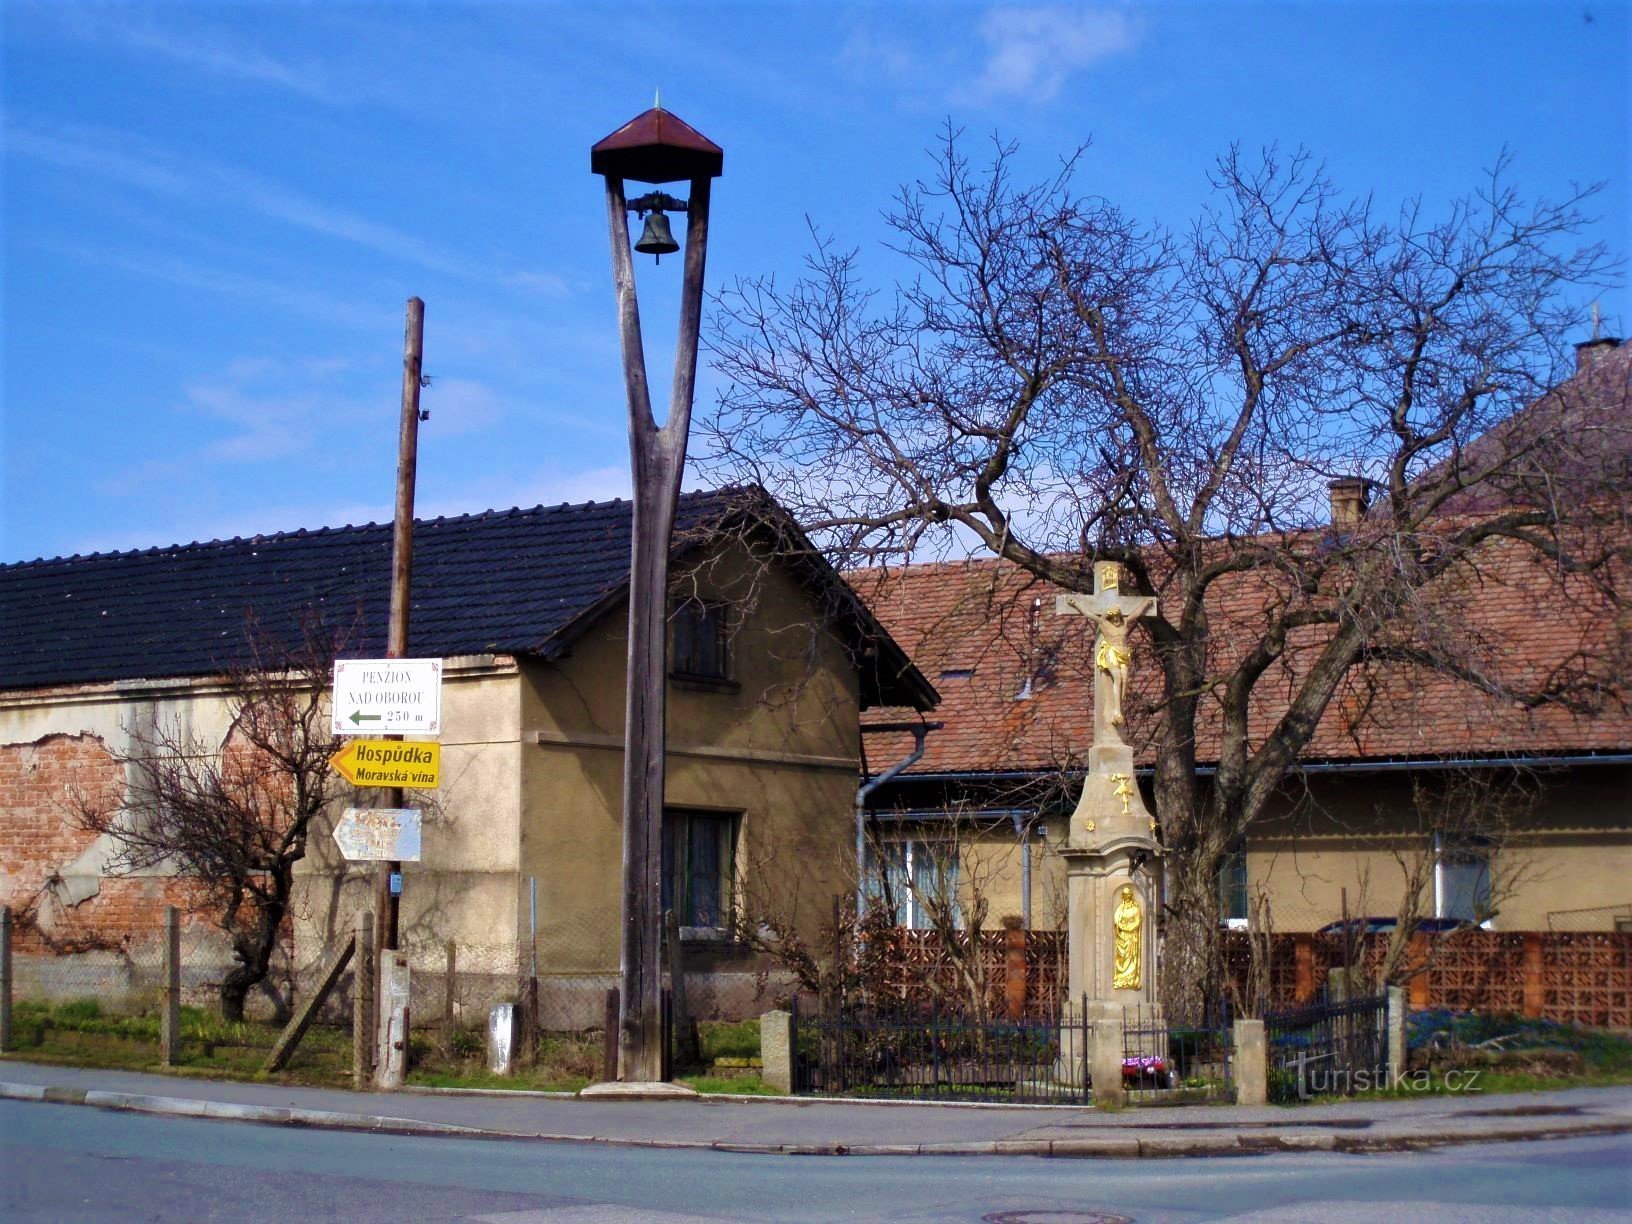 Кам'яний хрест із дзвіницею у Вєкоши (Градец Кралове, 28.3.2009)